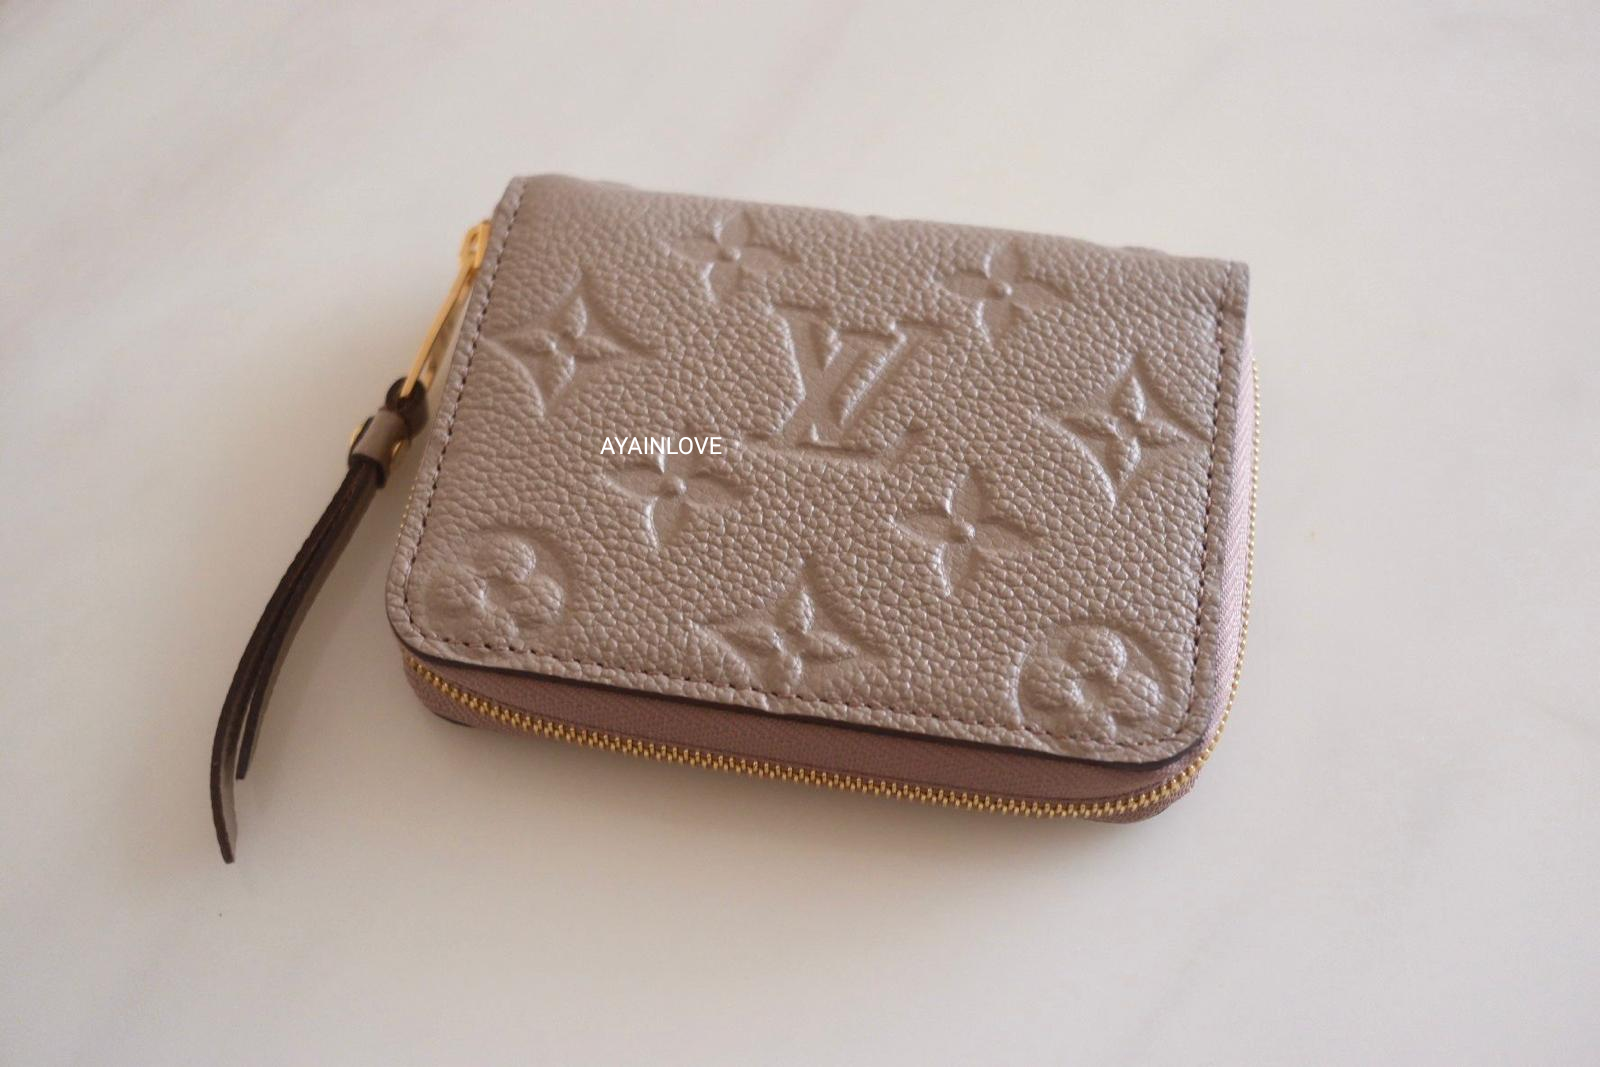 Authentic Louis Vuitton Monogram canvas coin purse